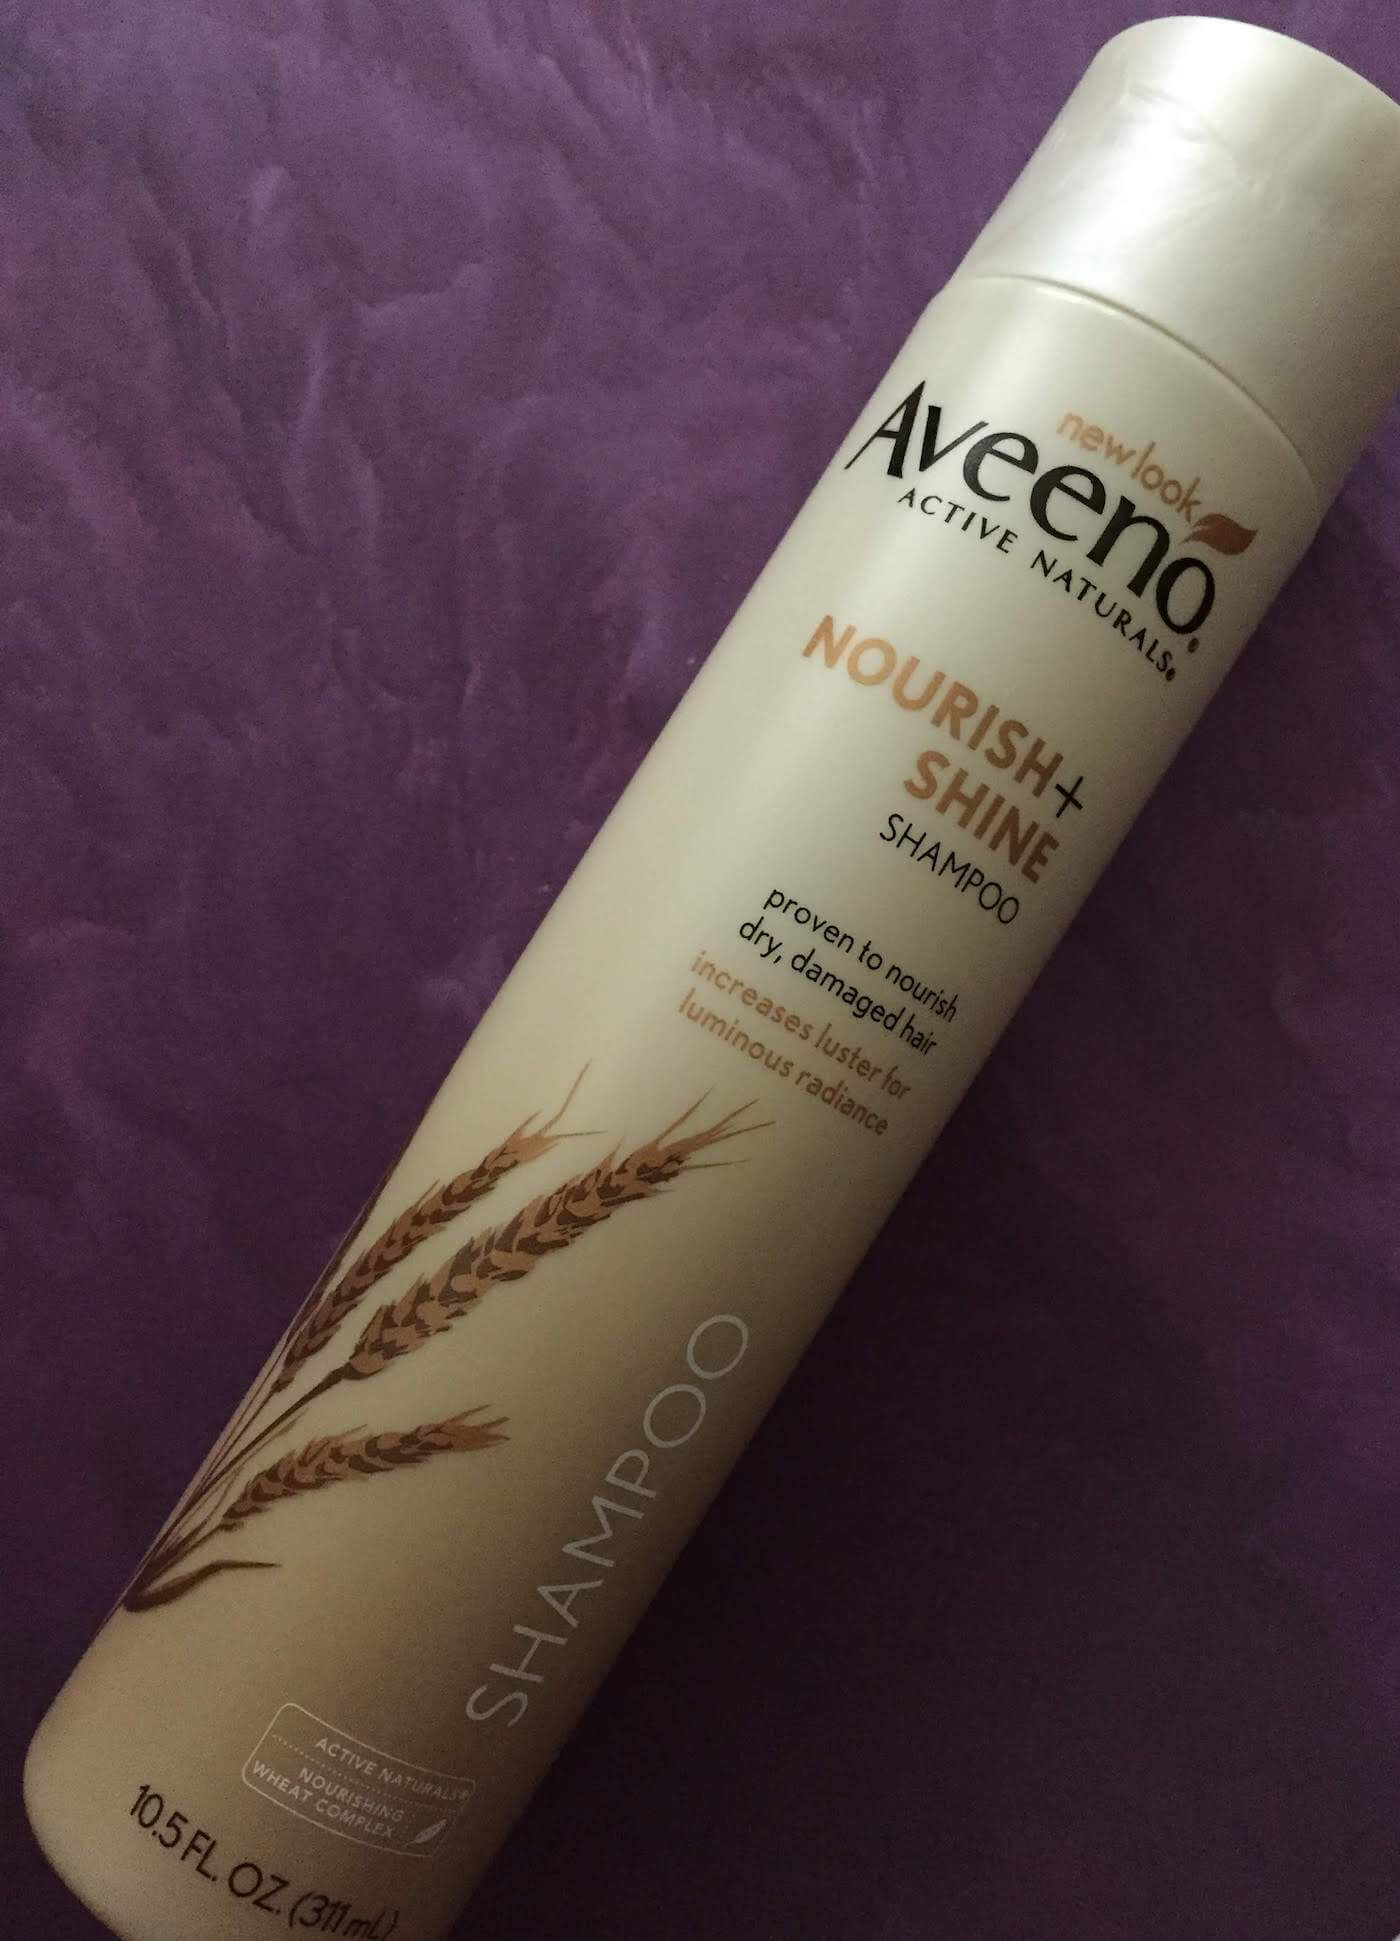 Aveeno Nourish + Shine Shampoo Review